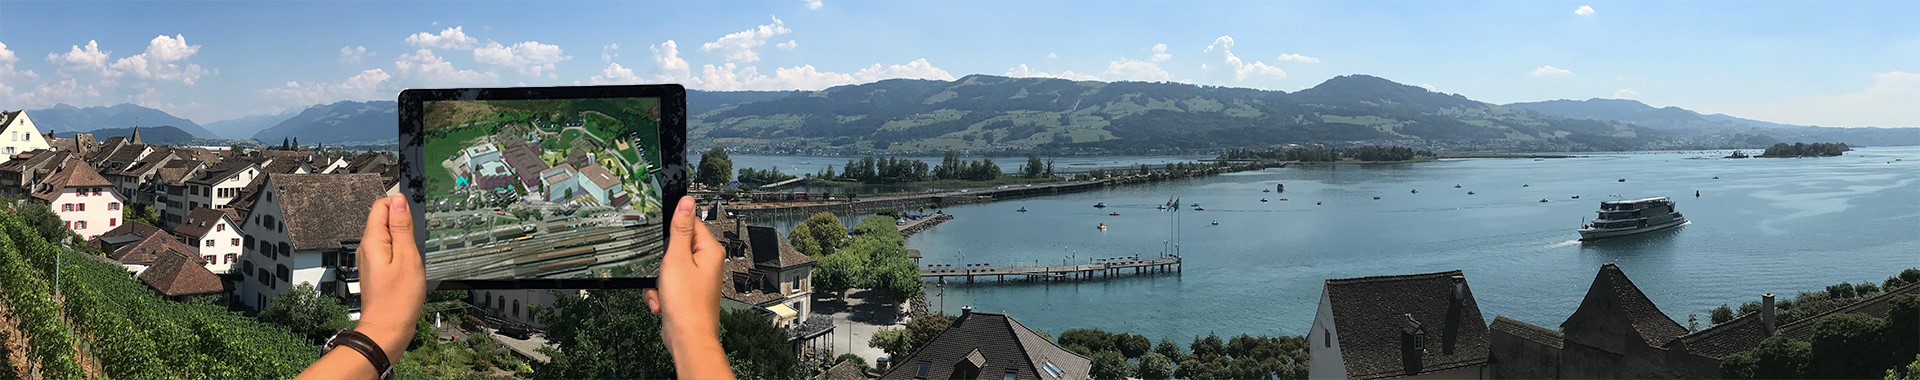 FEPL-Tagung 2019: Zukunftslandschaft Schweiz